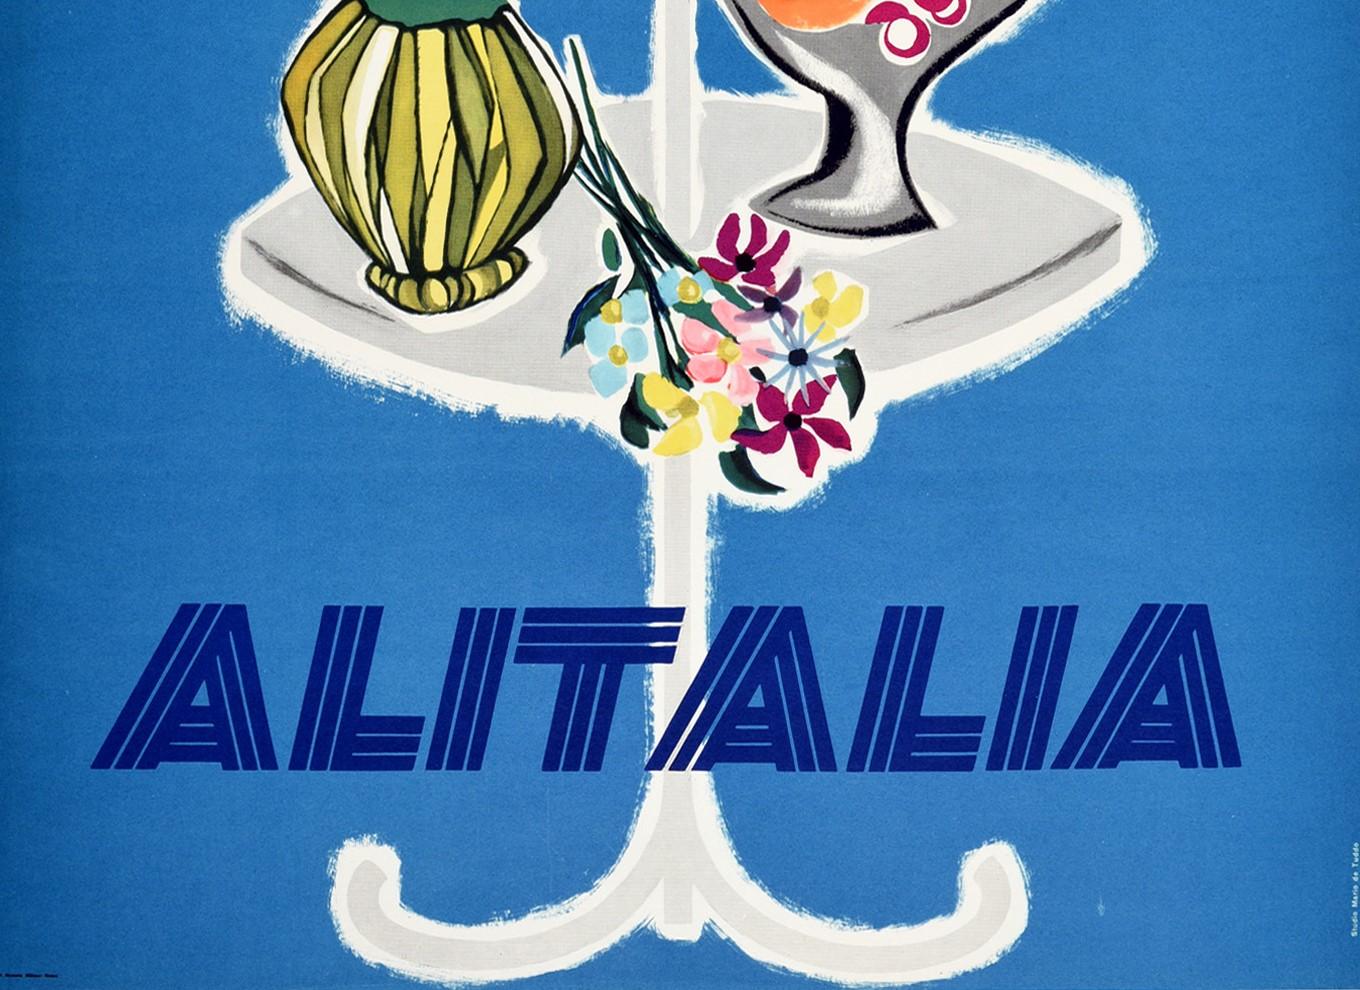 vintage alitalia posters